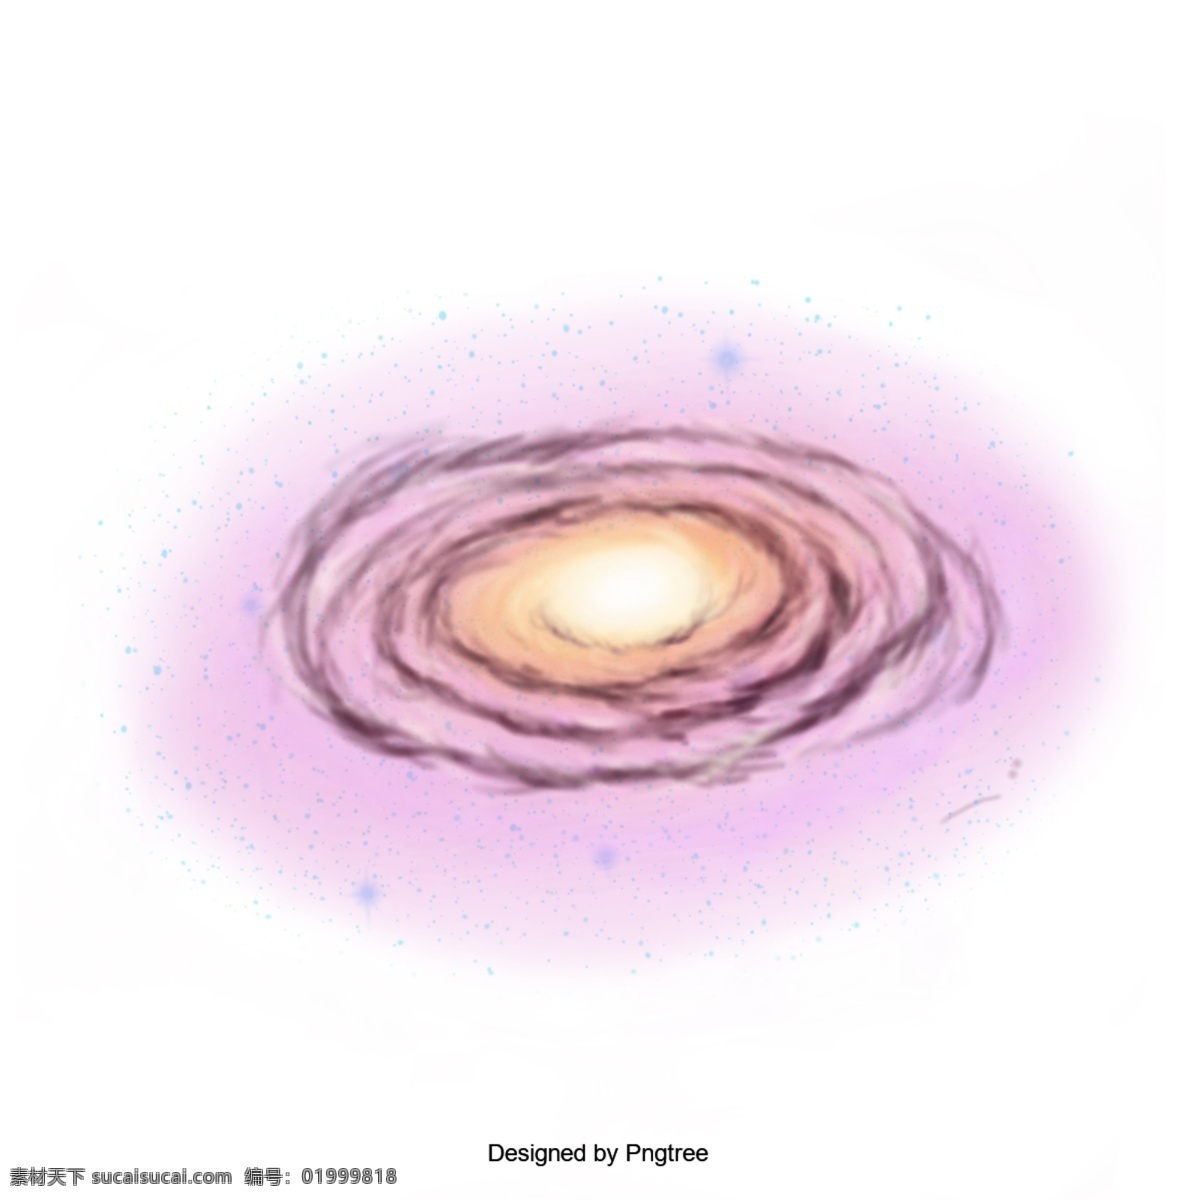 说明 星系 向量 螺旋星系 背景 星云 宇宙 抽象的 紫色的 空间 银河 光 天空 天体 e